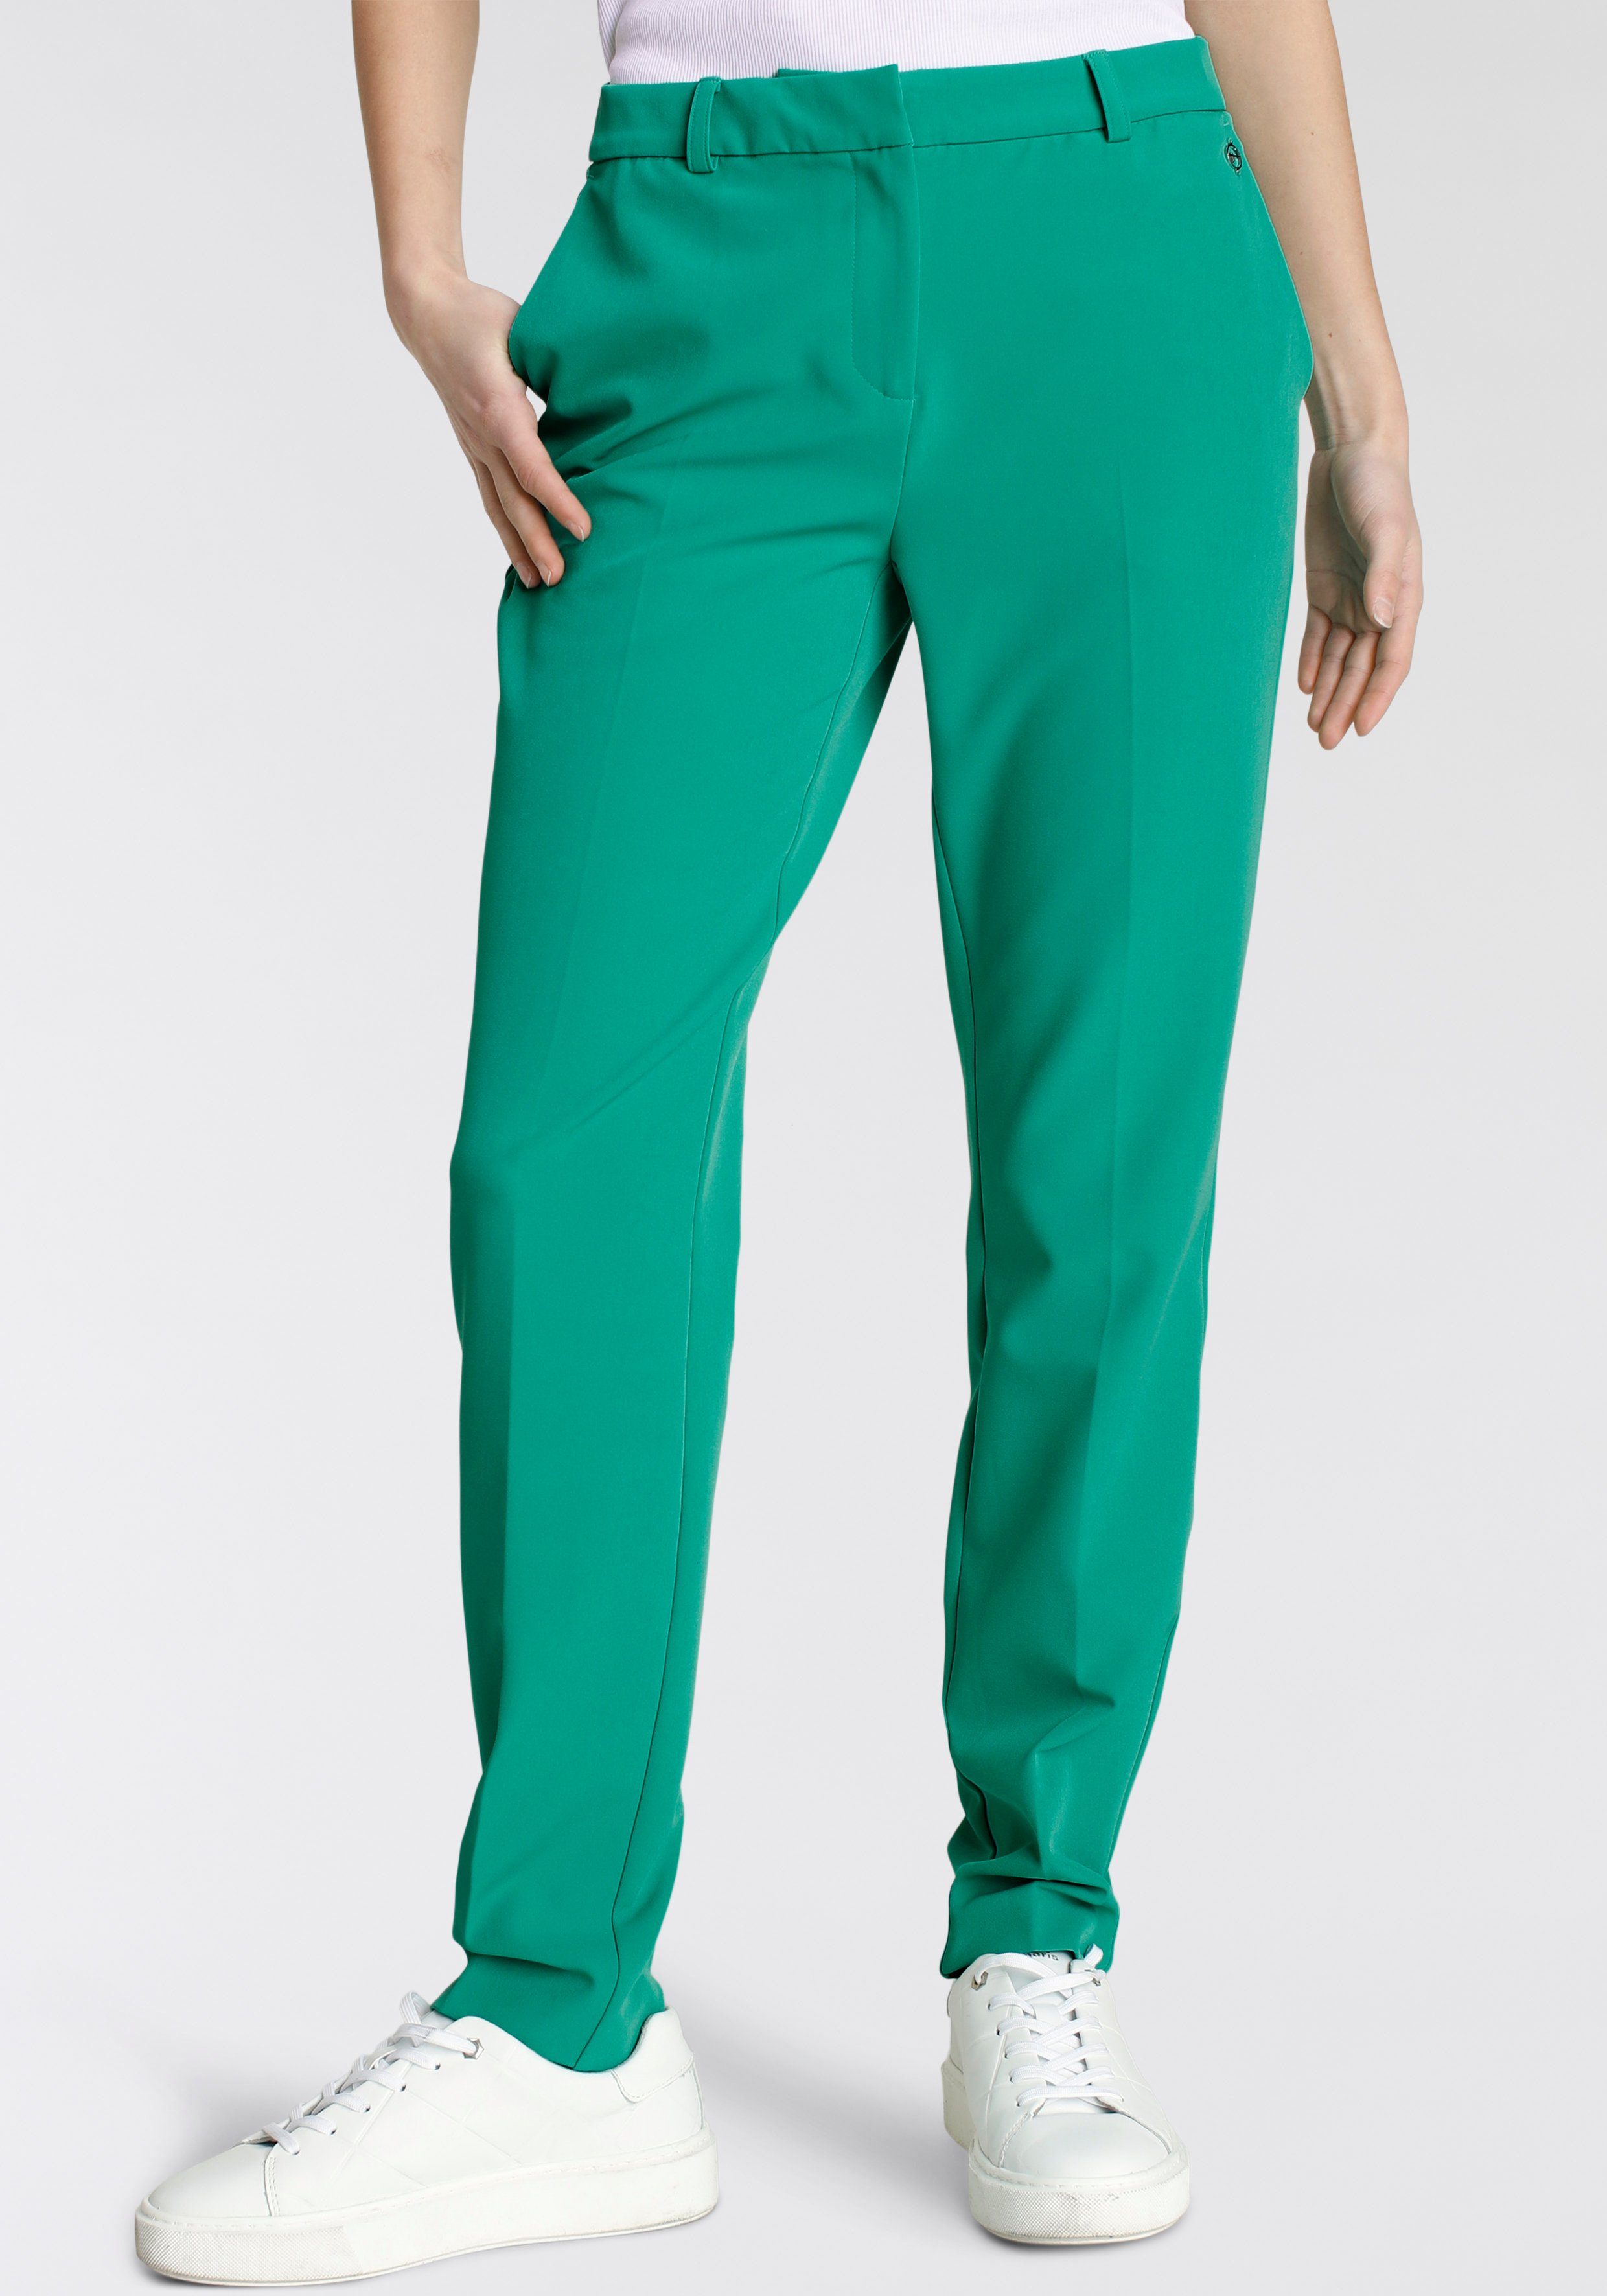 Tamaris Anzughose in Trendfarben grün nachhaltigem aus Material') (Hose